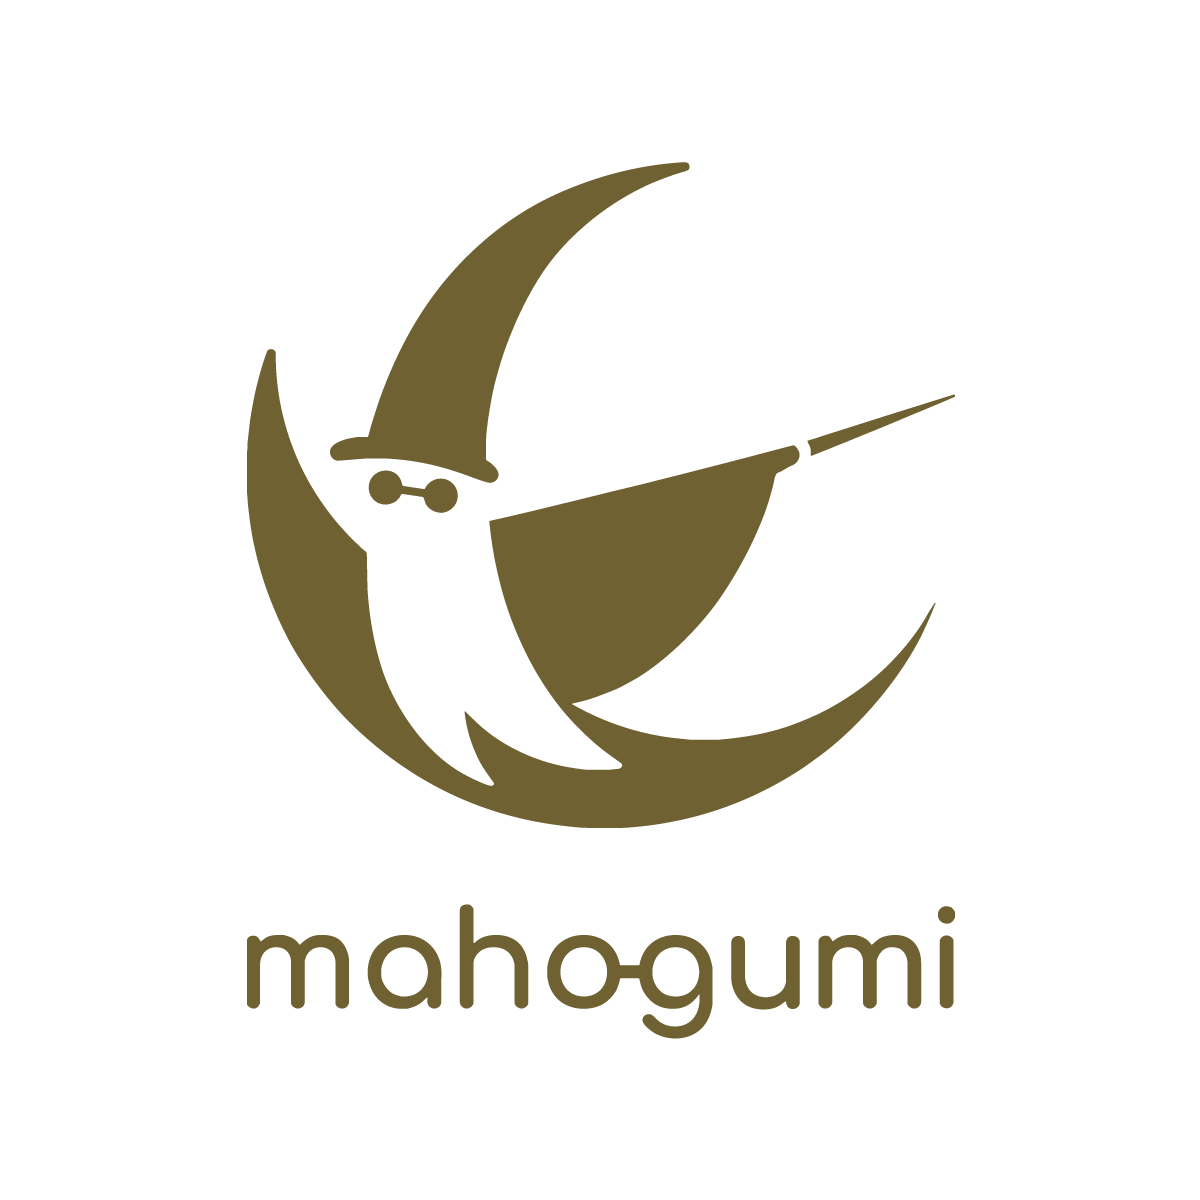 魔法組株式会社     Mahogumi Co., Ltd.     บริษัท มาโฮกุมิ จำกัด